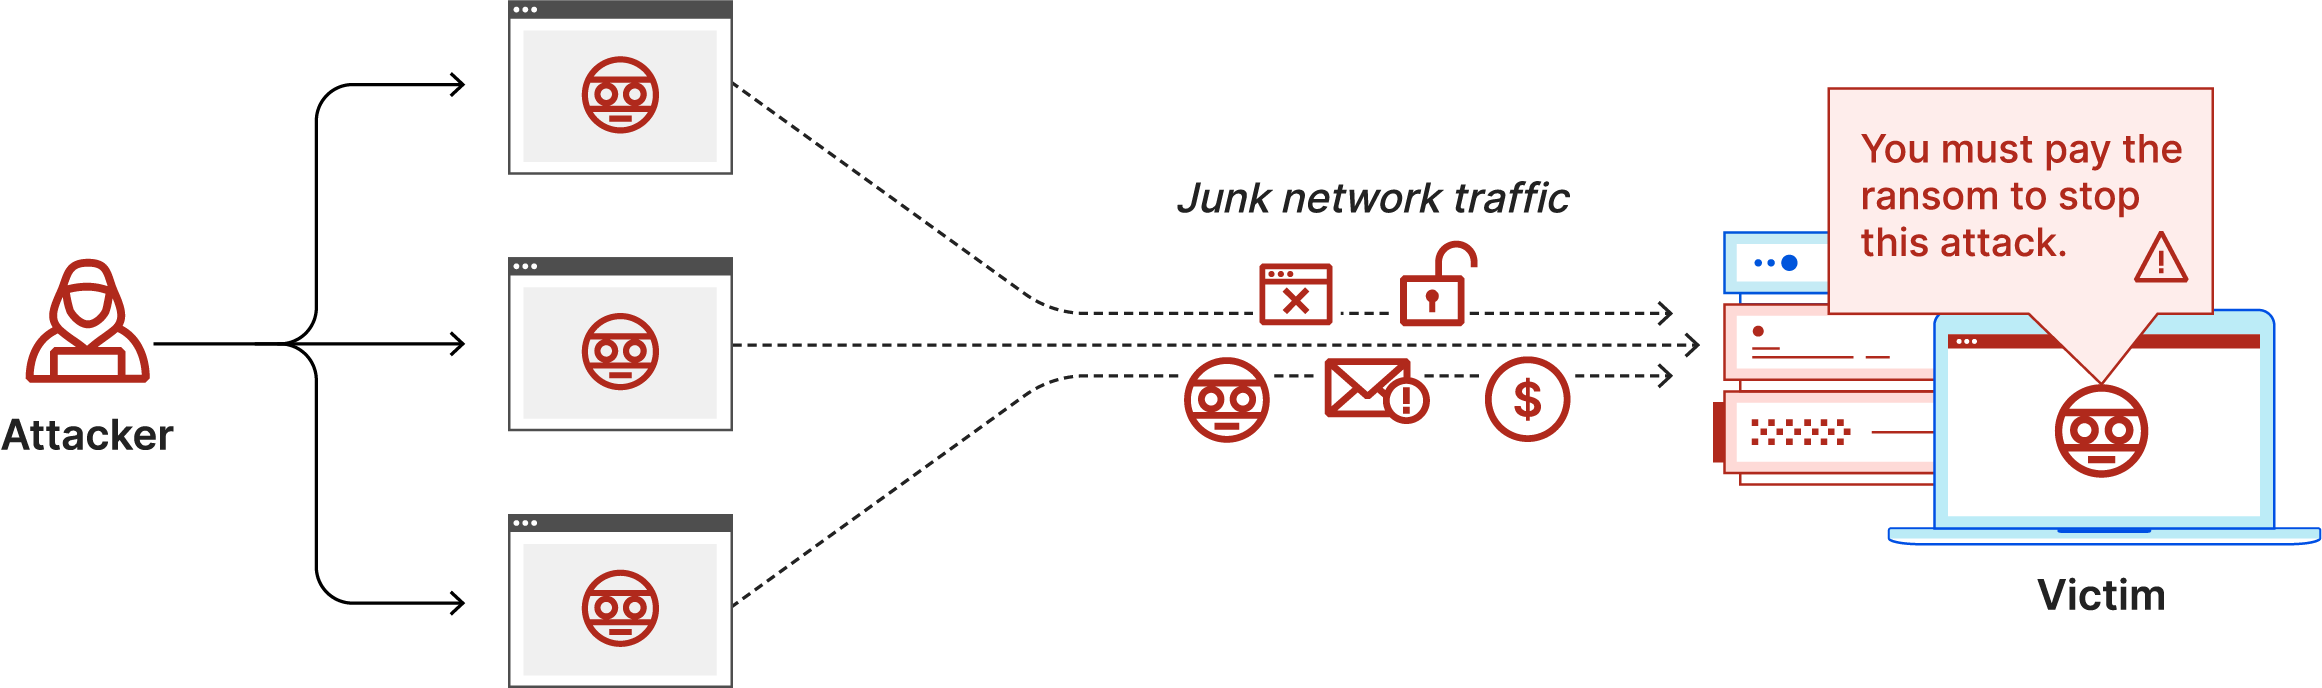 Diagramm eines Ransom-DDoS-Angriffs: Der Angreifer sendet Junk-Netzwerk-Traffic und eine Lösegeldforderung an das Opfer